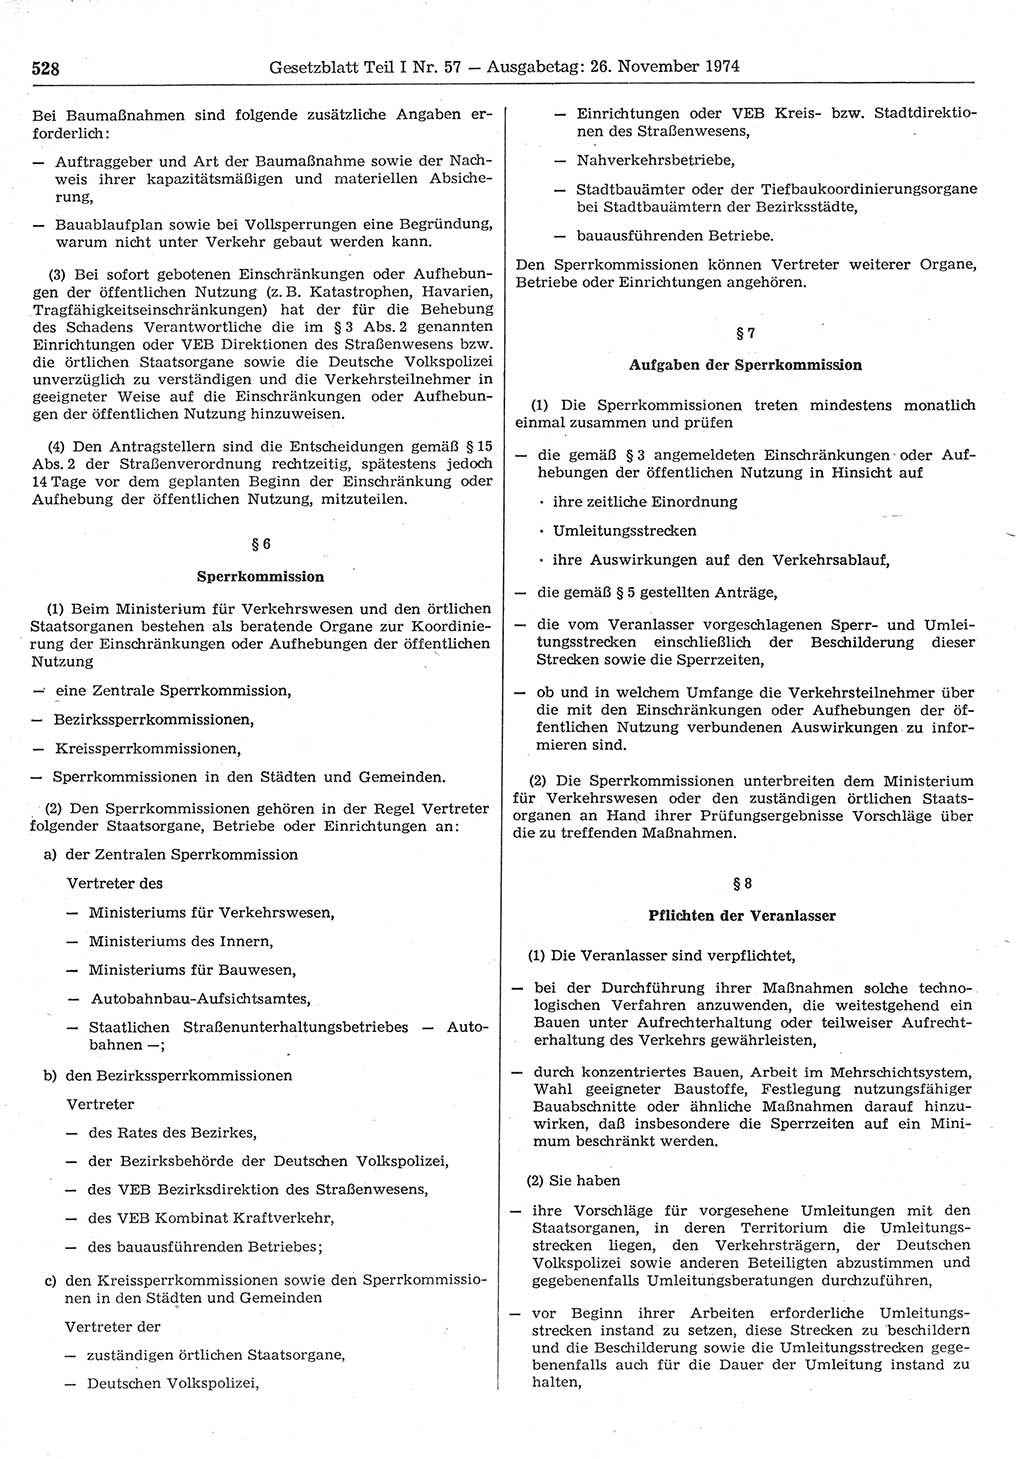 Gesetzblatt (GBl.) der Deutschen Demokratischen Republik (DDR) Teil Ⅰ 1974, Seite 528 (GBl. DDR Ⅰ 1974, S. 528)